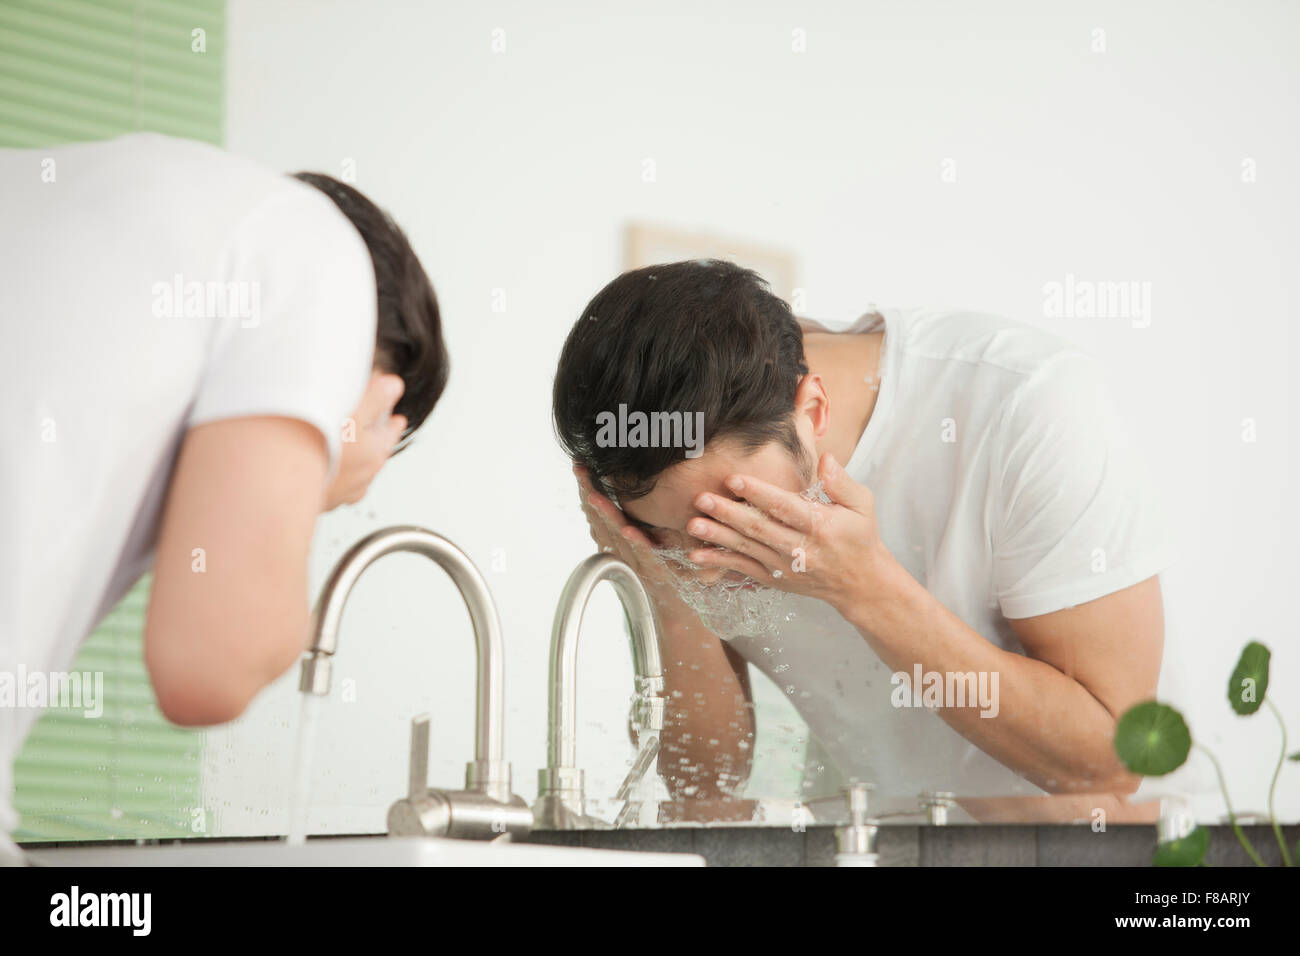 Vista lateral retrato de joven lavarse la cara en el lavabo en el cuarto de baño Foto de stock